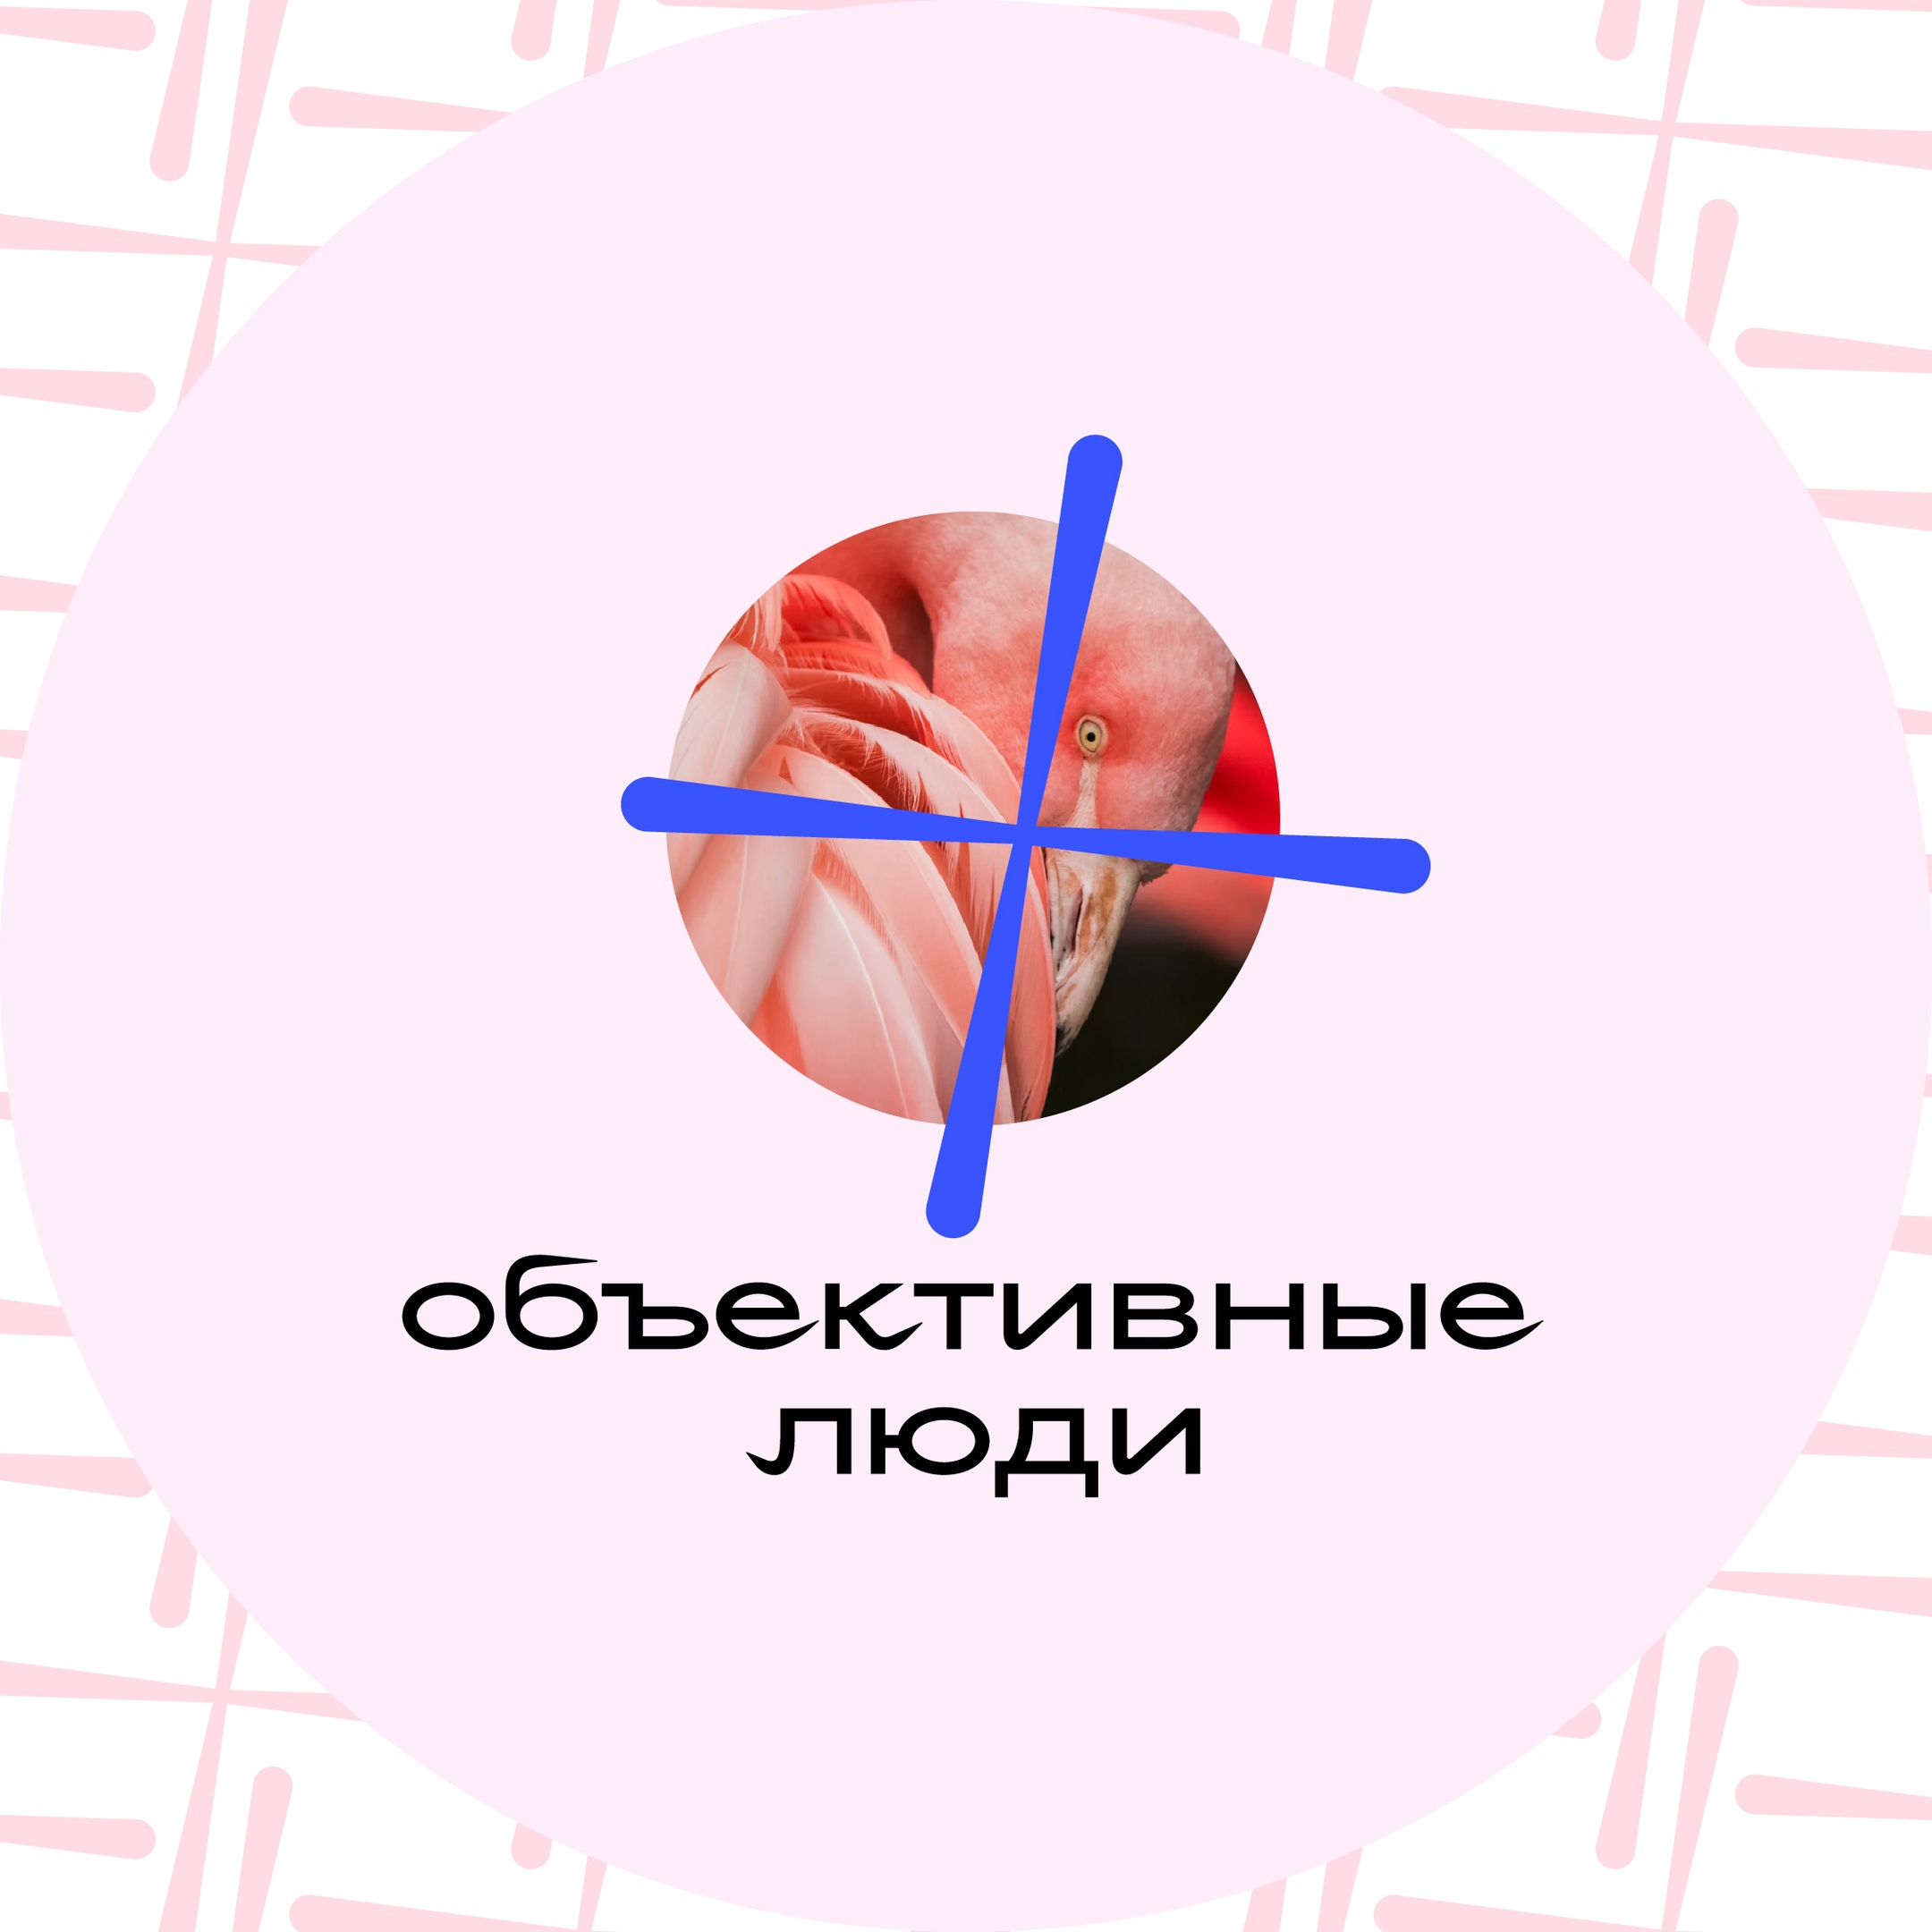 Окружной форум «Объективные люди» для медийщиков пройдет в Ханты-Мансийске